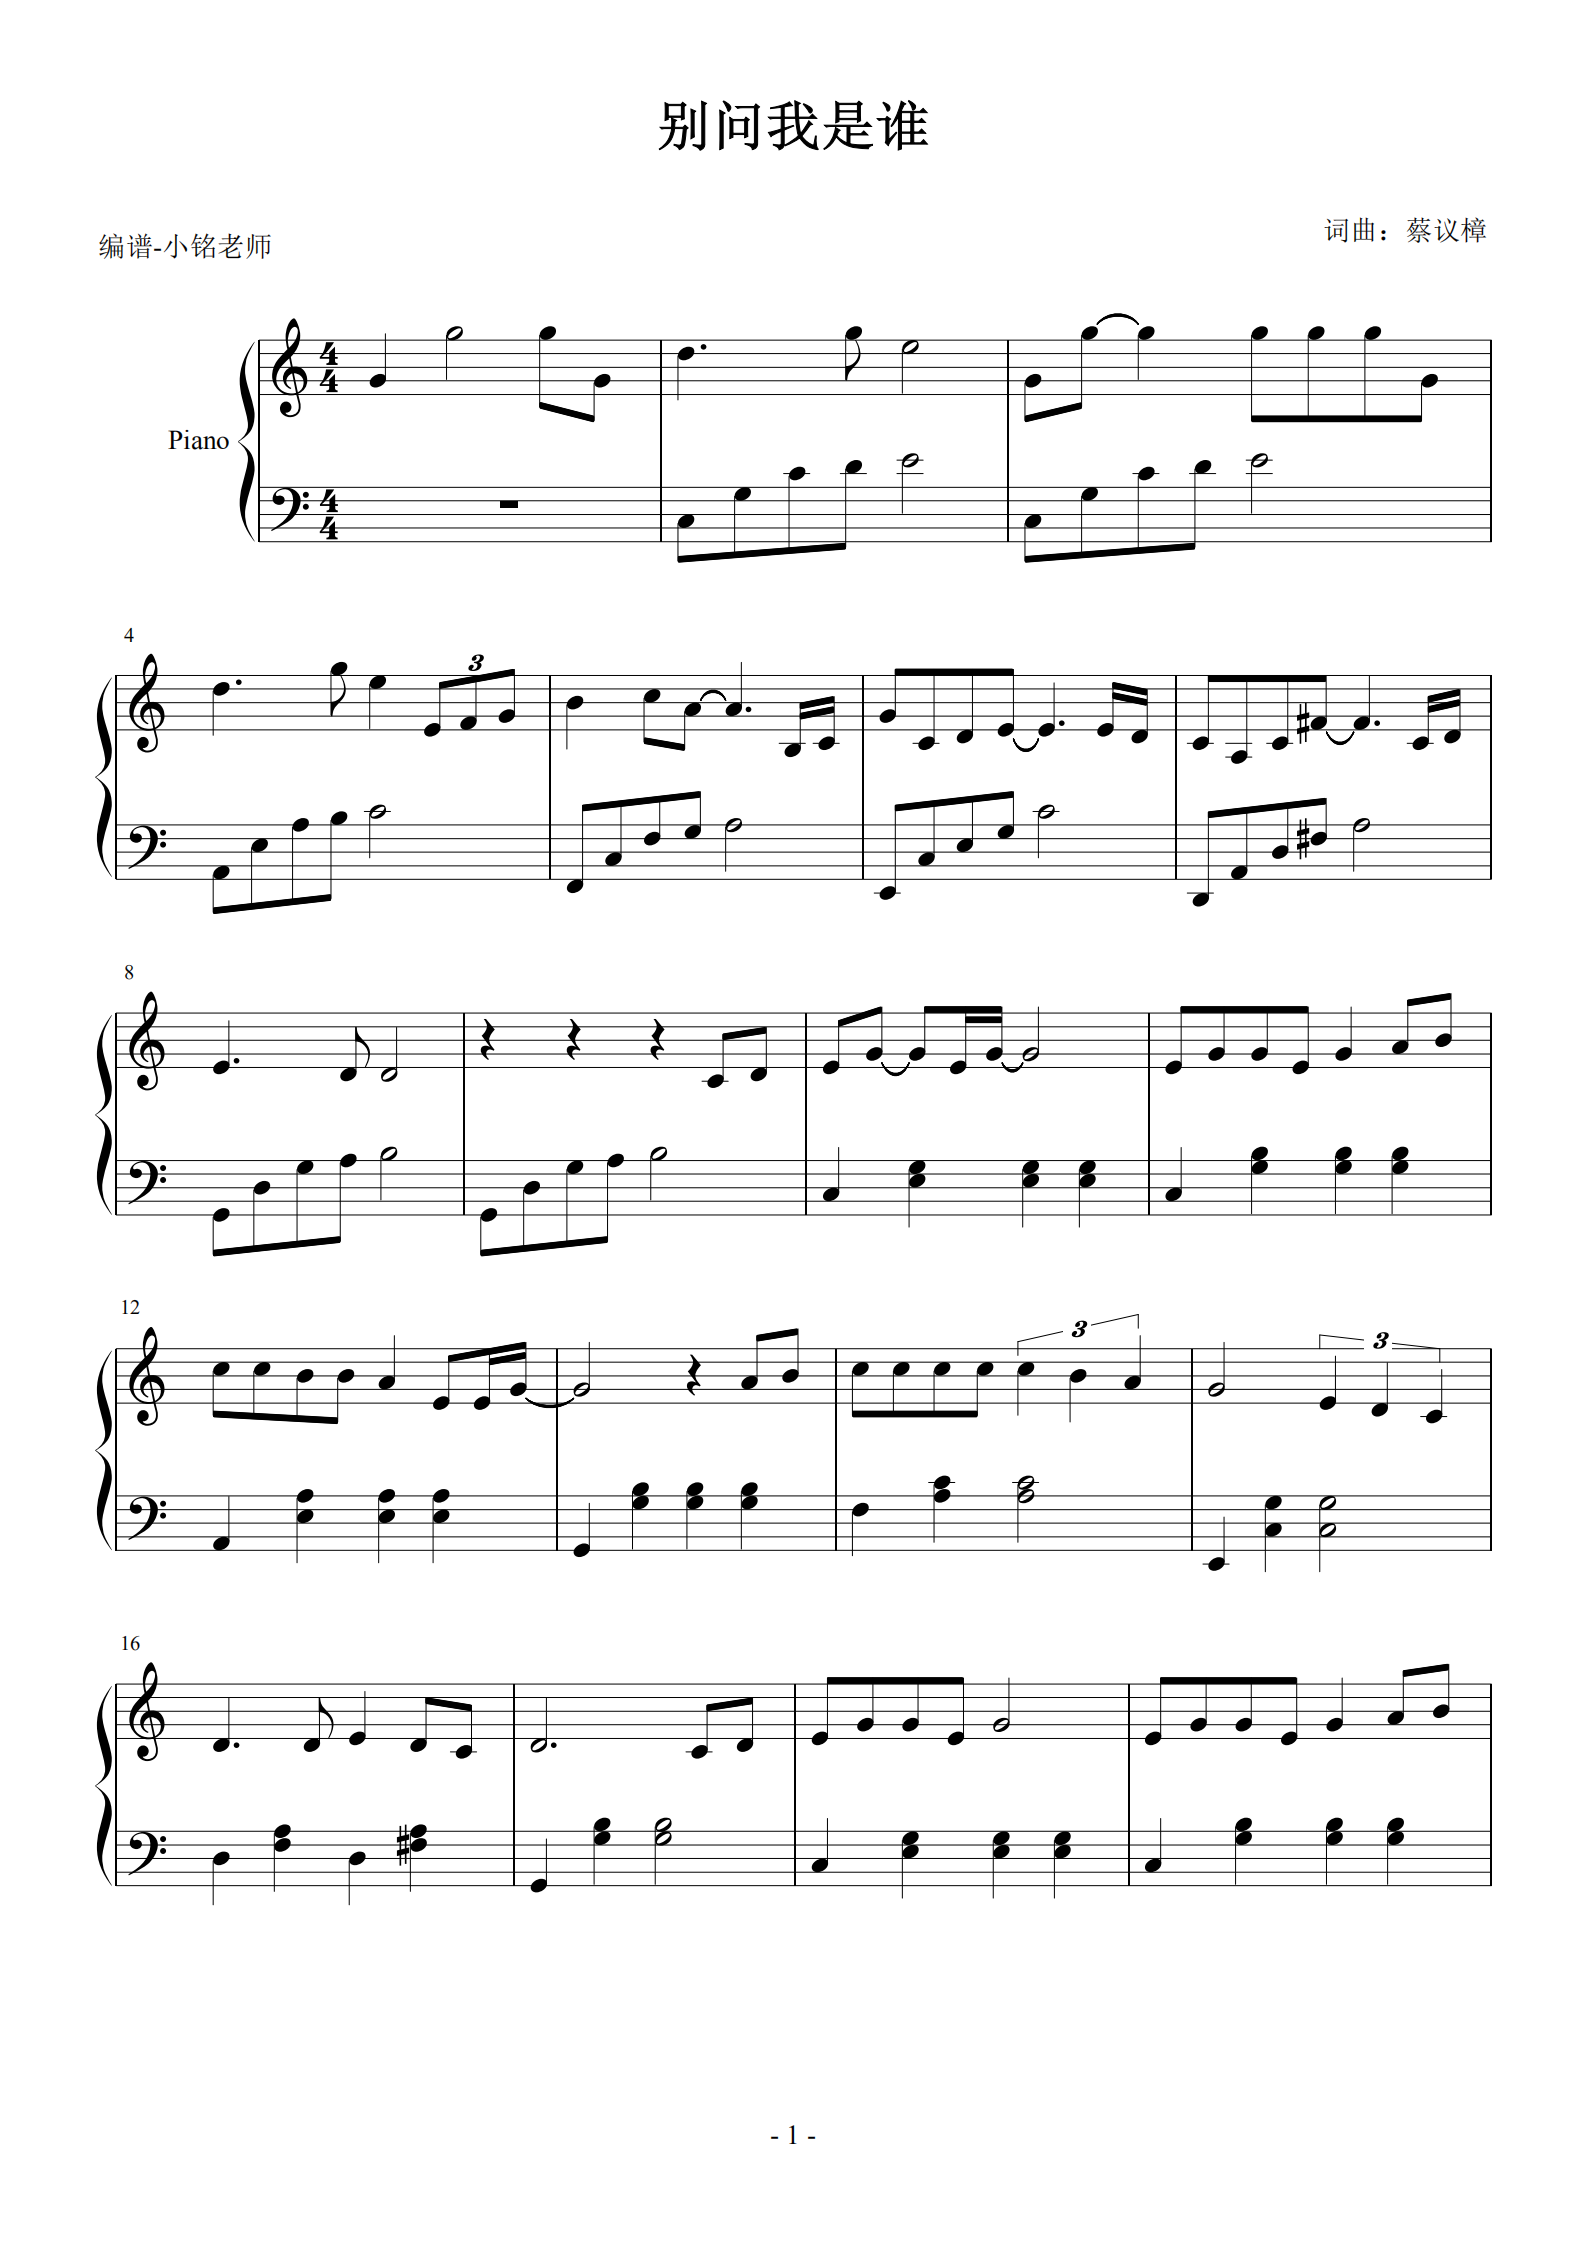 别问我是谁-王馨平-钢琴谱文件（五线谱、双手简谱、数字谱、Midi、PDF）免费下载